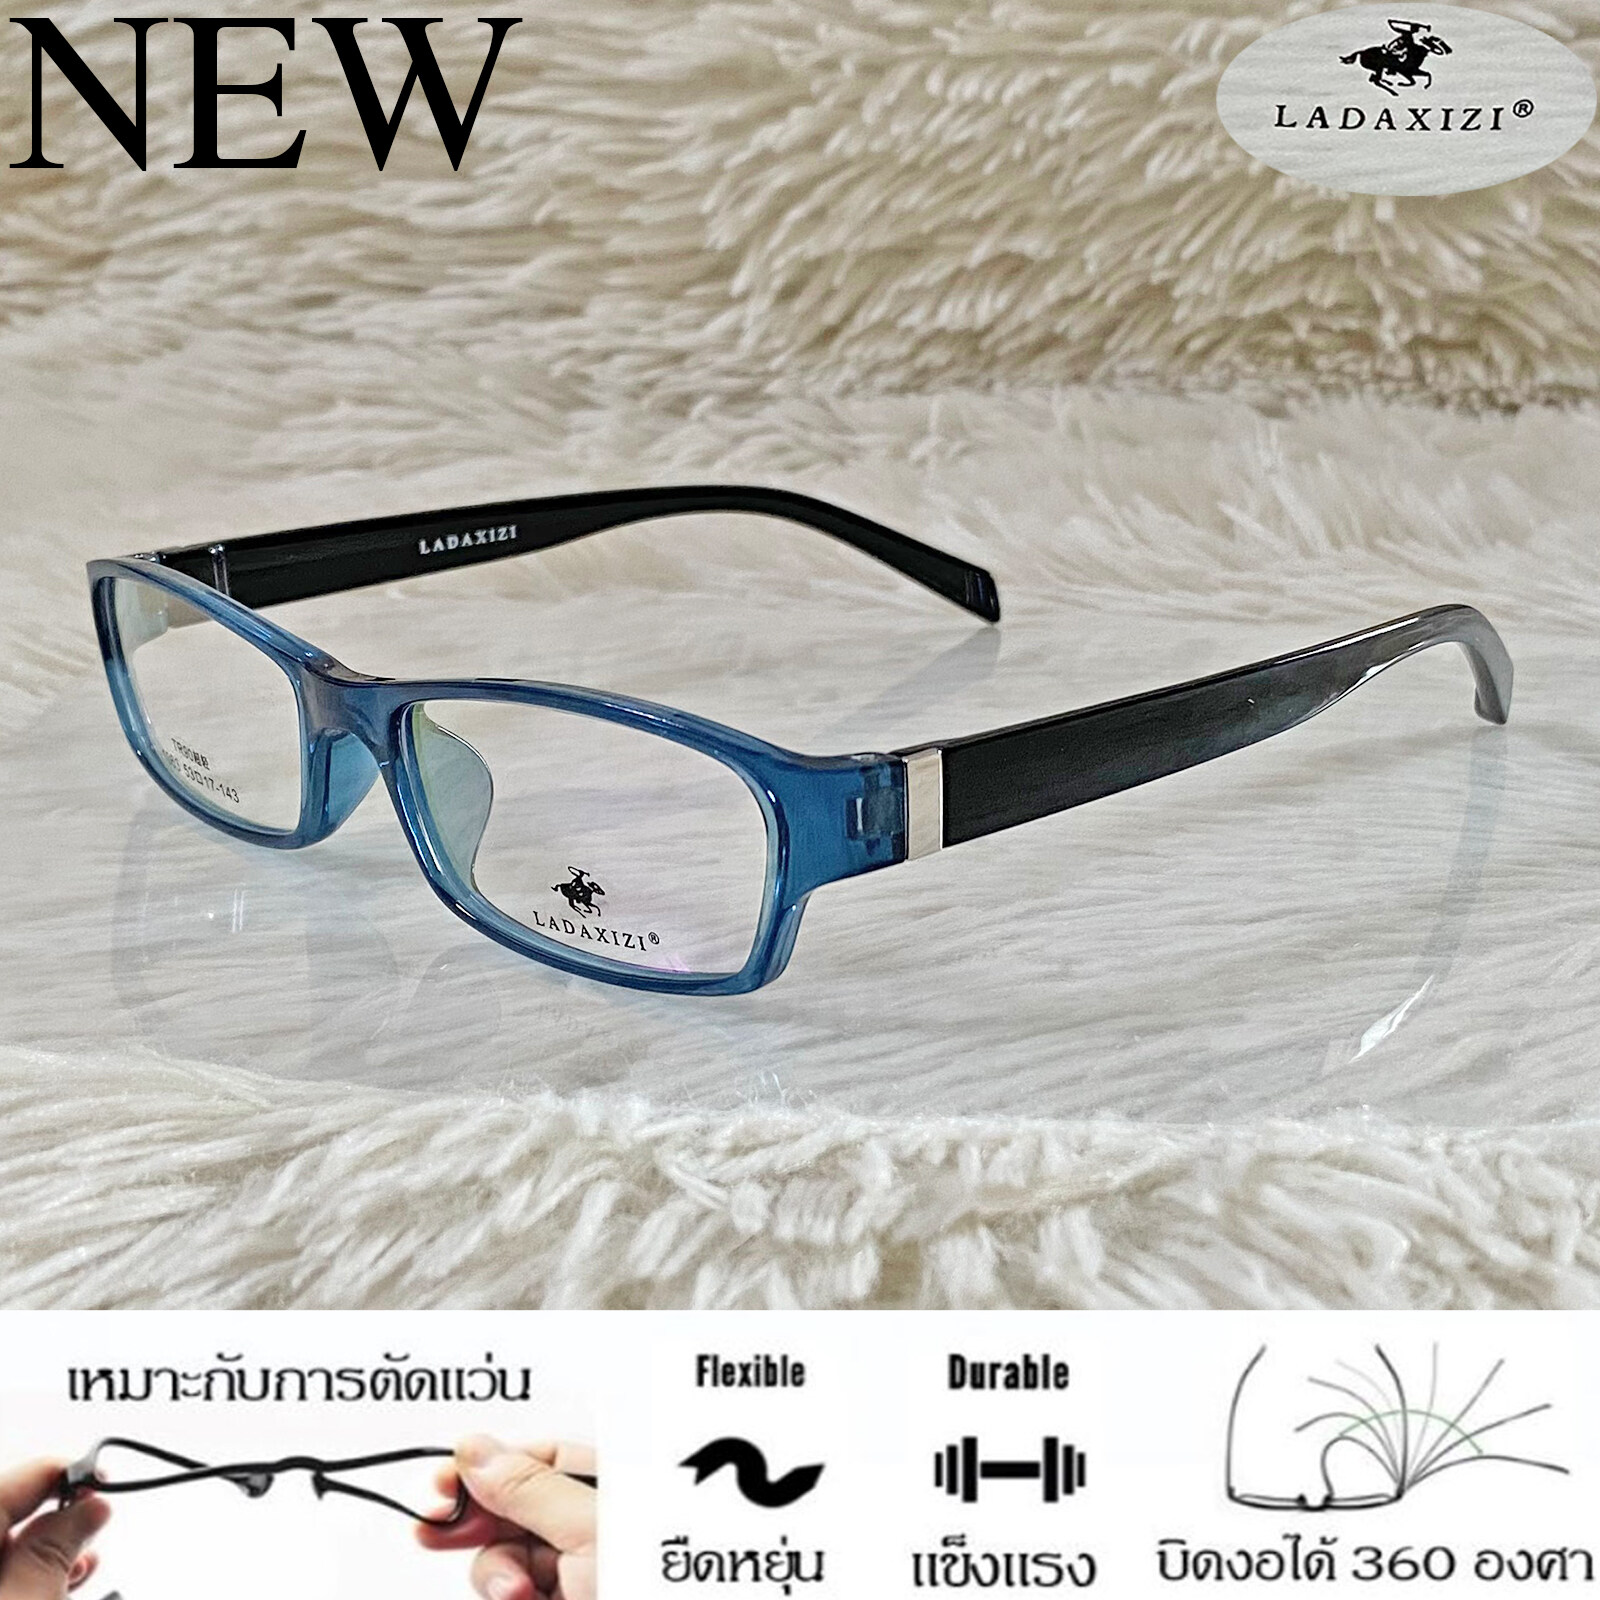 กรอบแว่นตา TR 90 สำหรับตัดเลนส์ แว่นตา Fashion ชาย-หญิง รุ่น LADAXIZI 1063 สีฟ้าคราม กรอบเต็ม ทรงรี ขาข้อต่อ ทนความร้อนสูง รับตัดเลนส์ ทุกชนิด